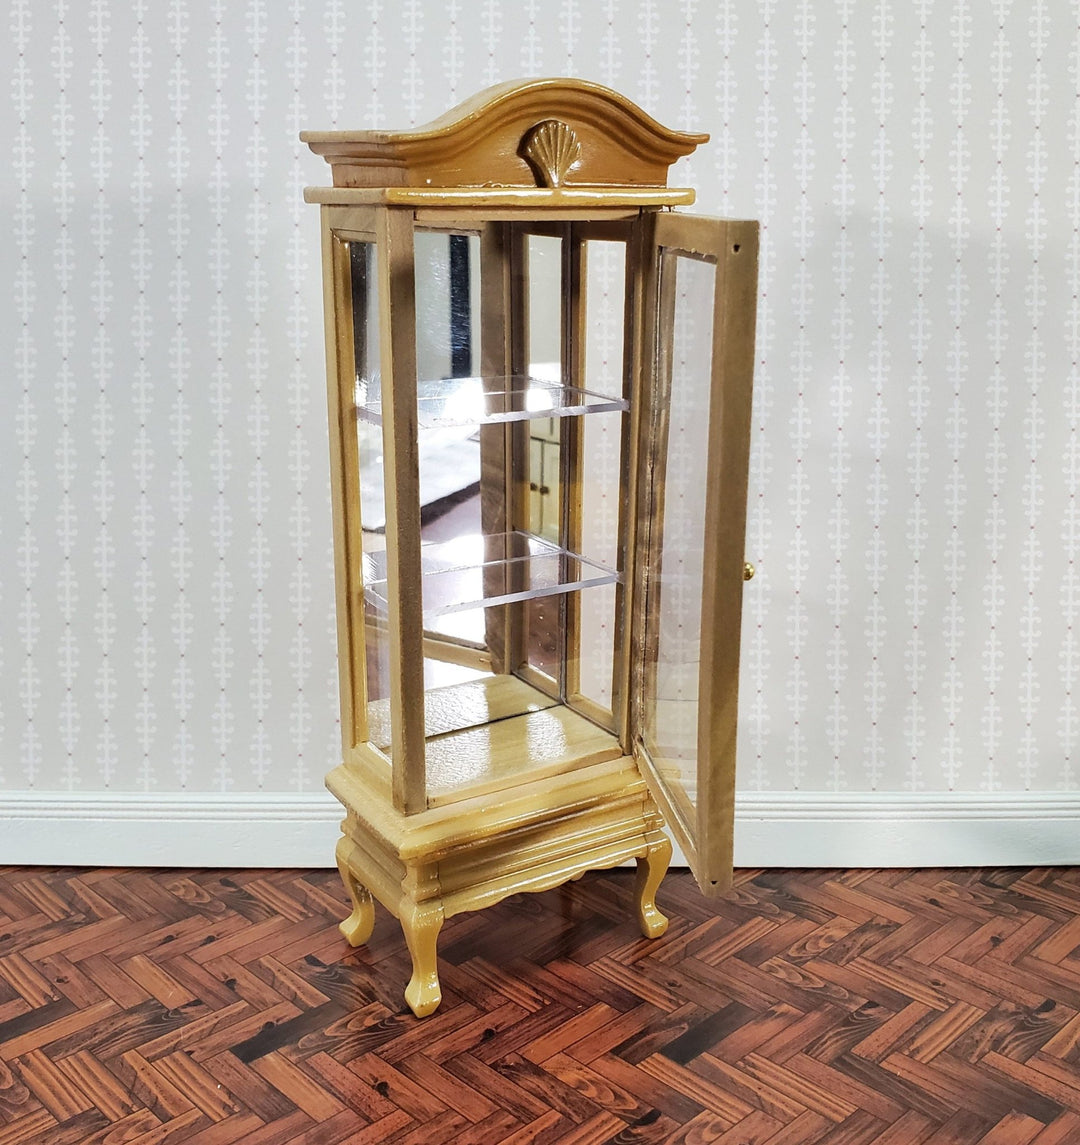 Dollhouse Curio Cabinet Mirrored Back Hutch Light Oak Finish 1:12 Scale Miniature Furniture - Miniature Crush